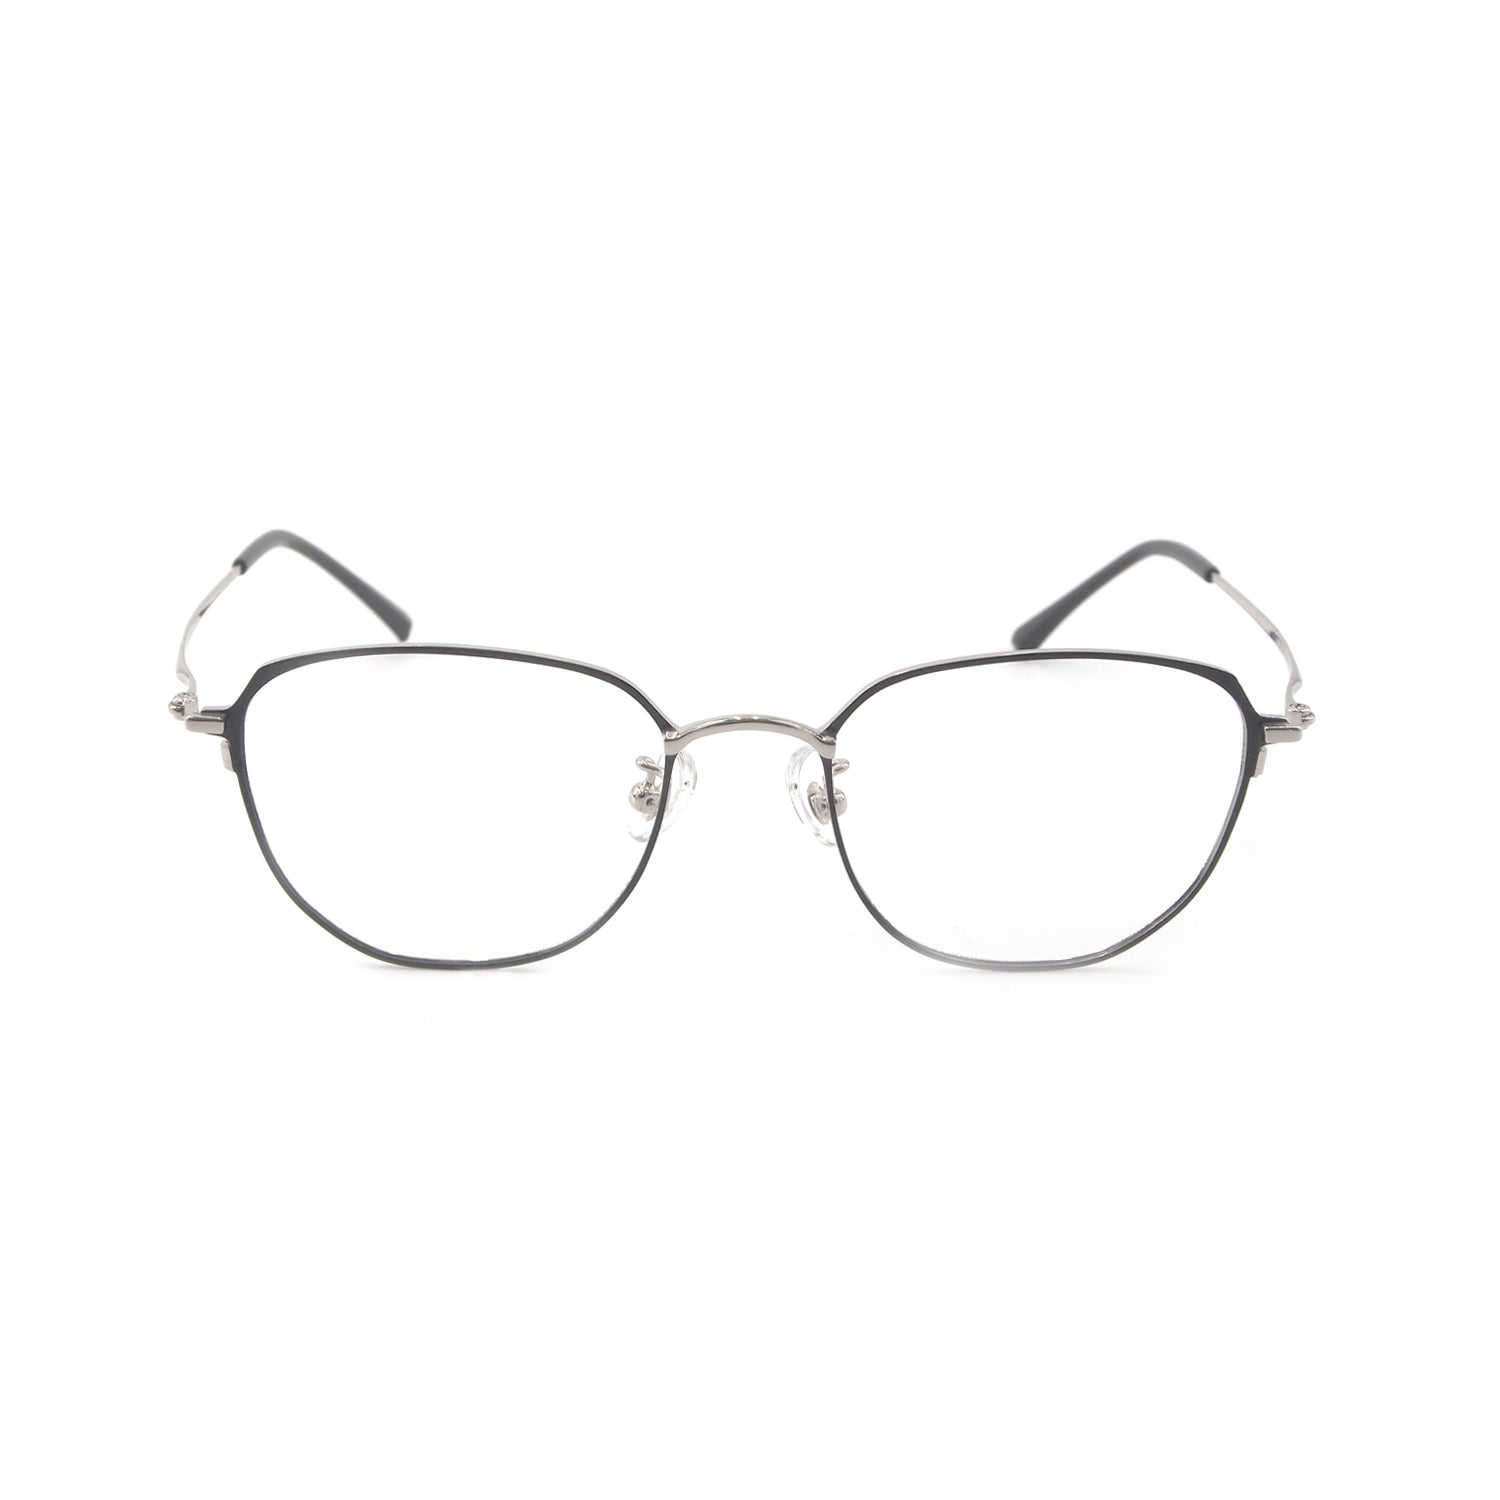 Ryder in Glaze Eyeglasses - sightonomy